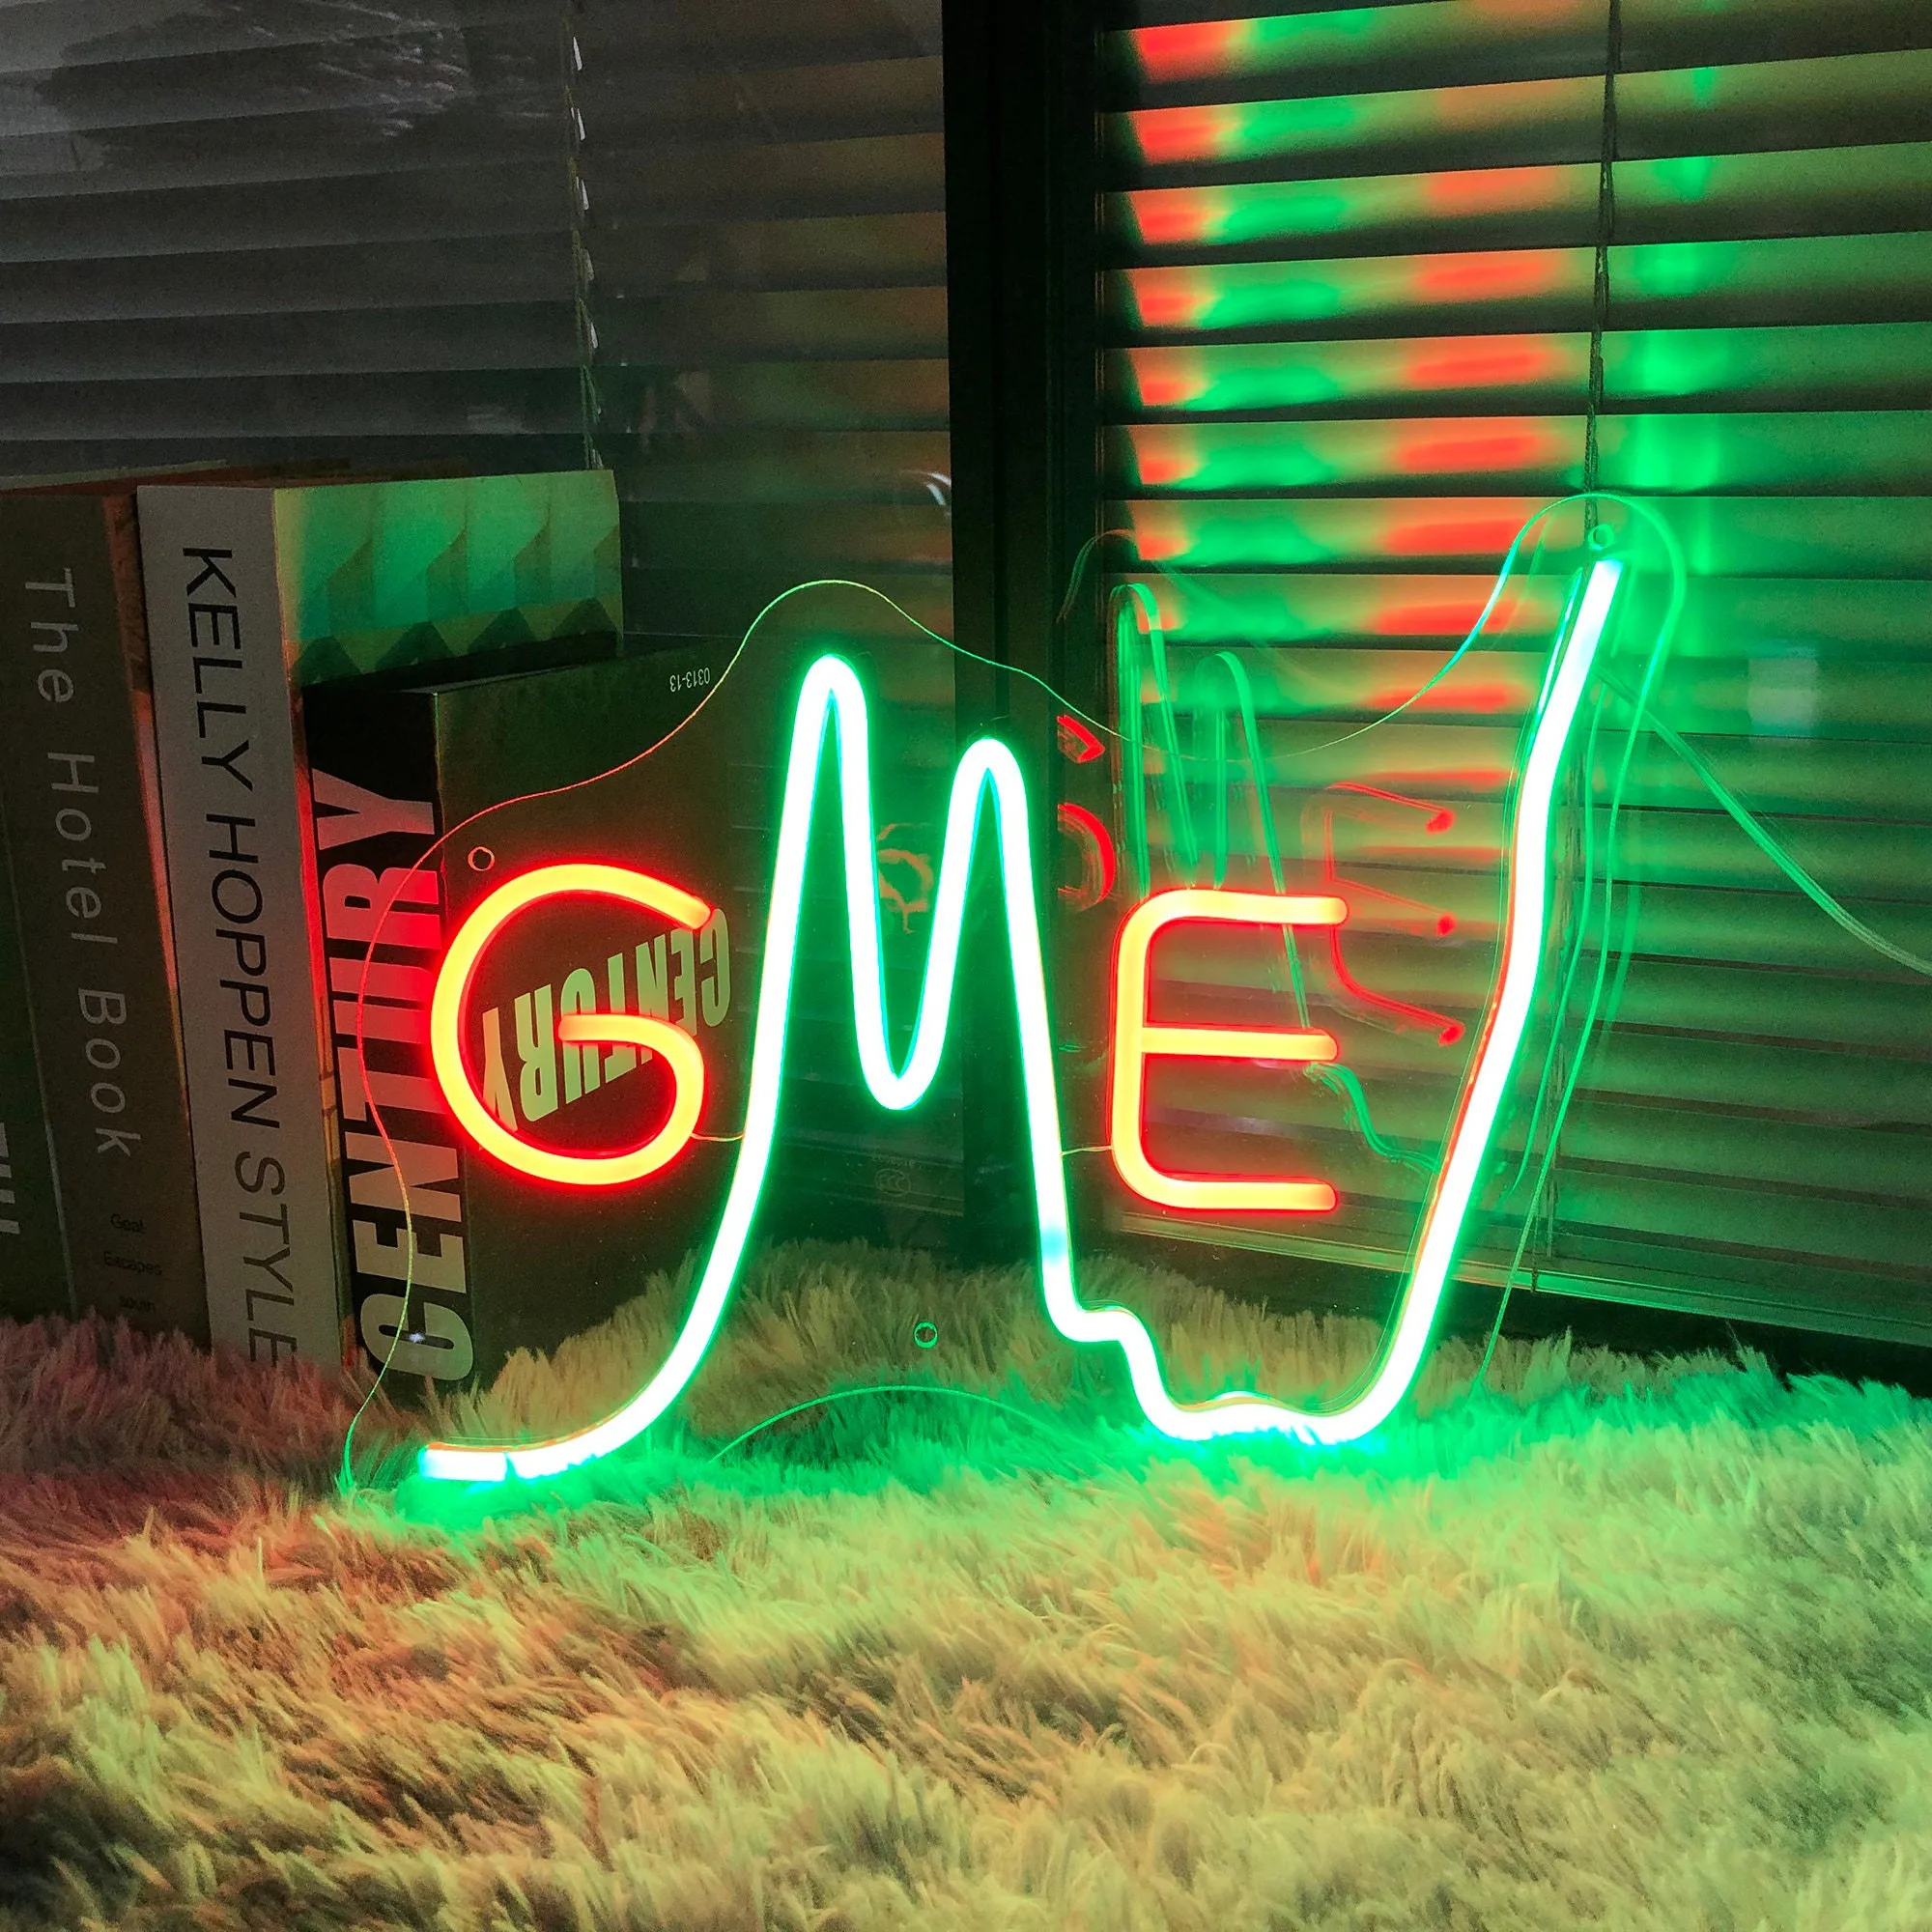 

Неоновая вывеска GME Gamestop светильник лый подарок для друзей, ценные бумаги, финансы, индивидуальная неоновая вывеска, украшение для офиса, иг...